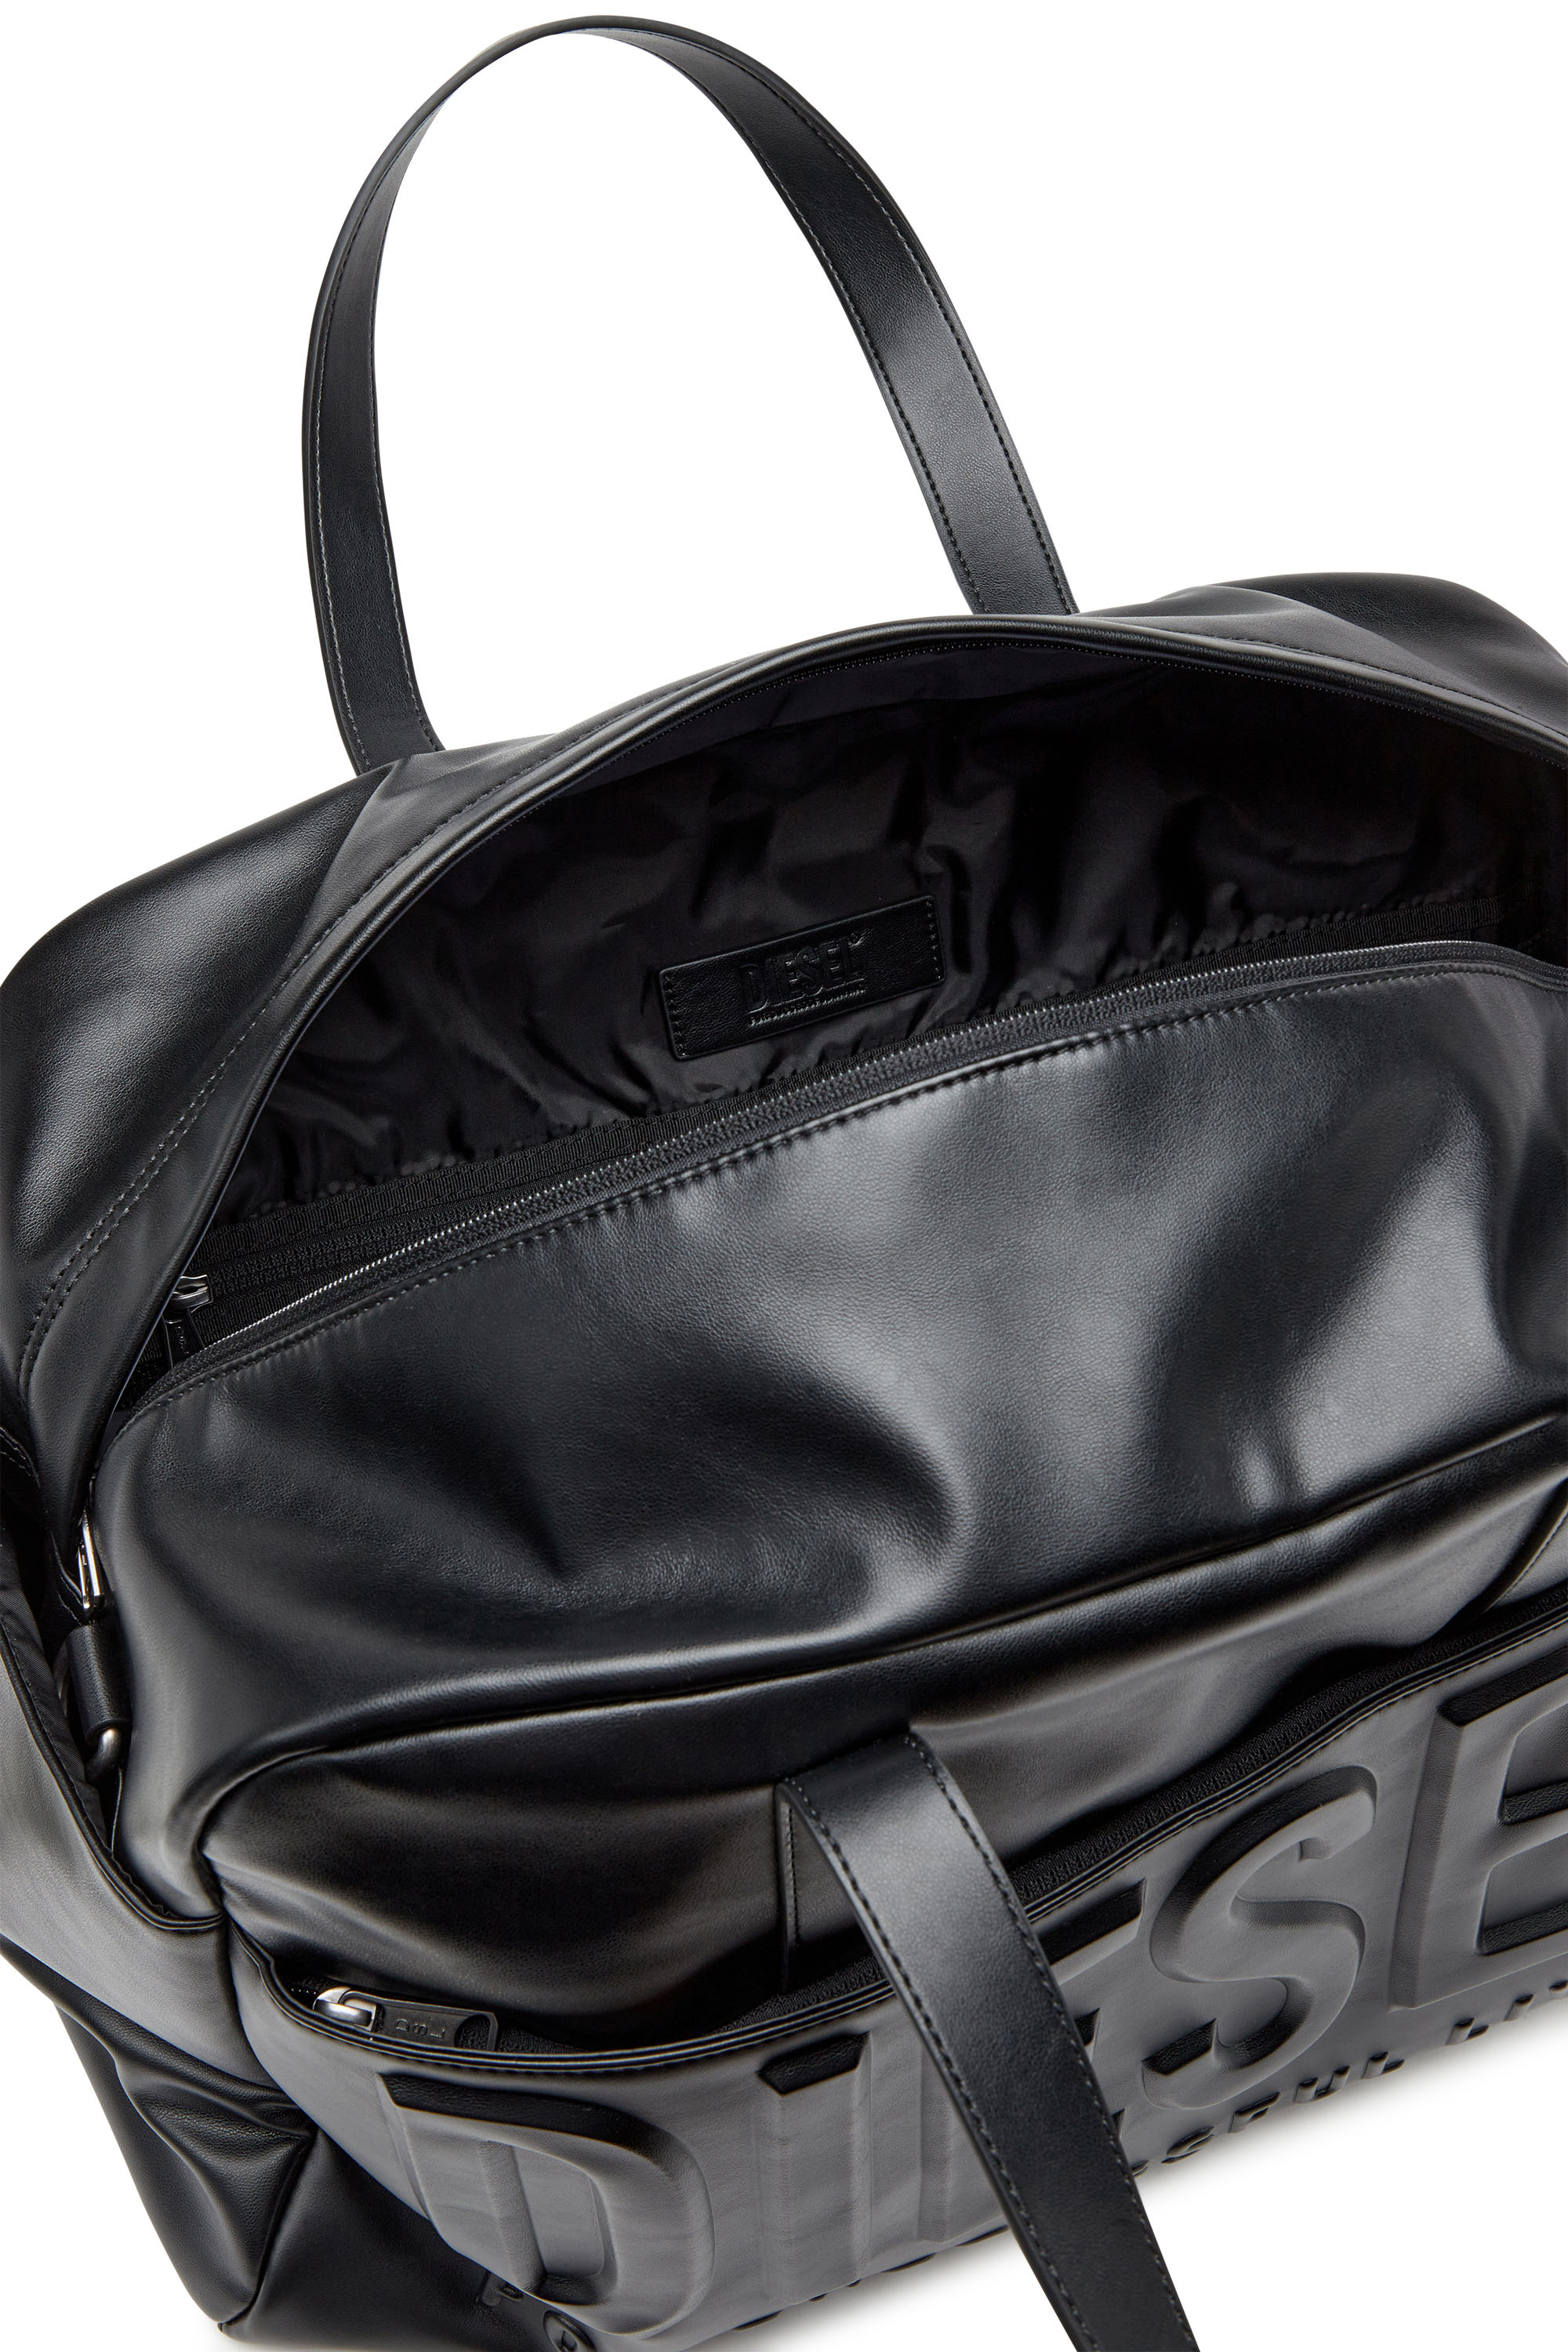 DSL 3D DUFFLE L X Dsl 3D Duffle L X Travel Bag - Duffle bag with 